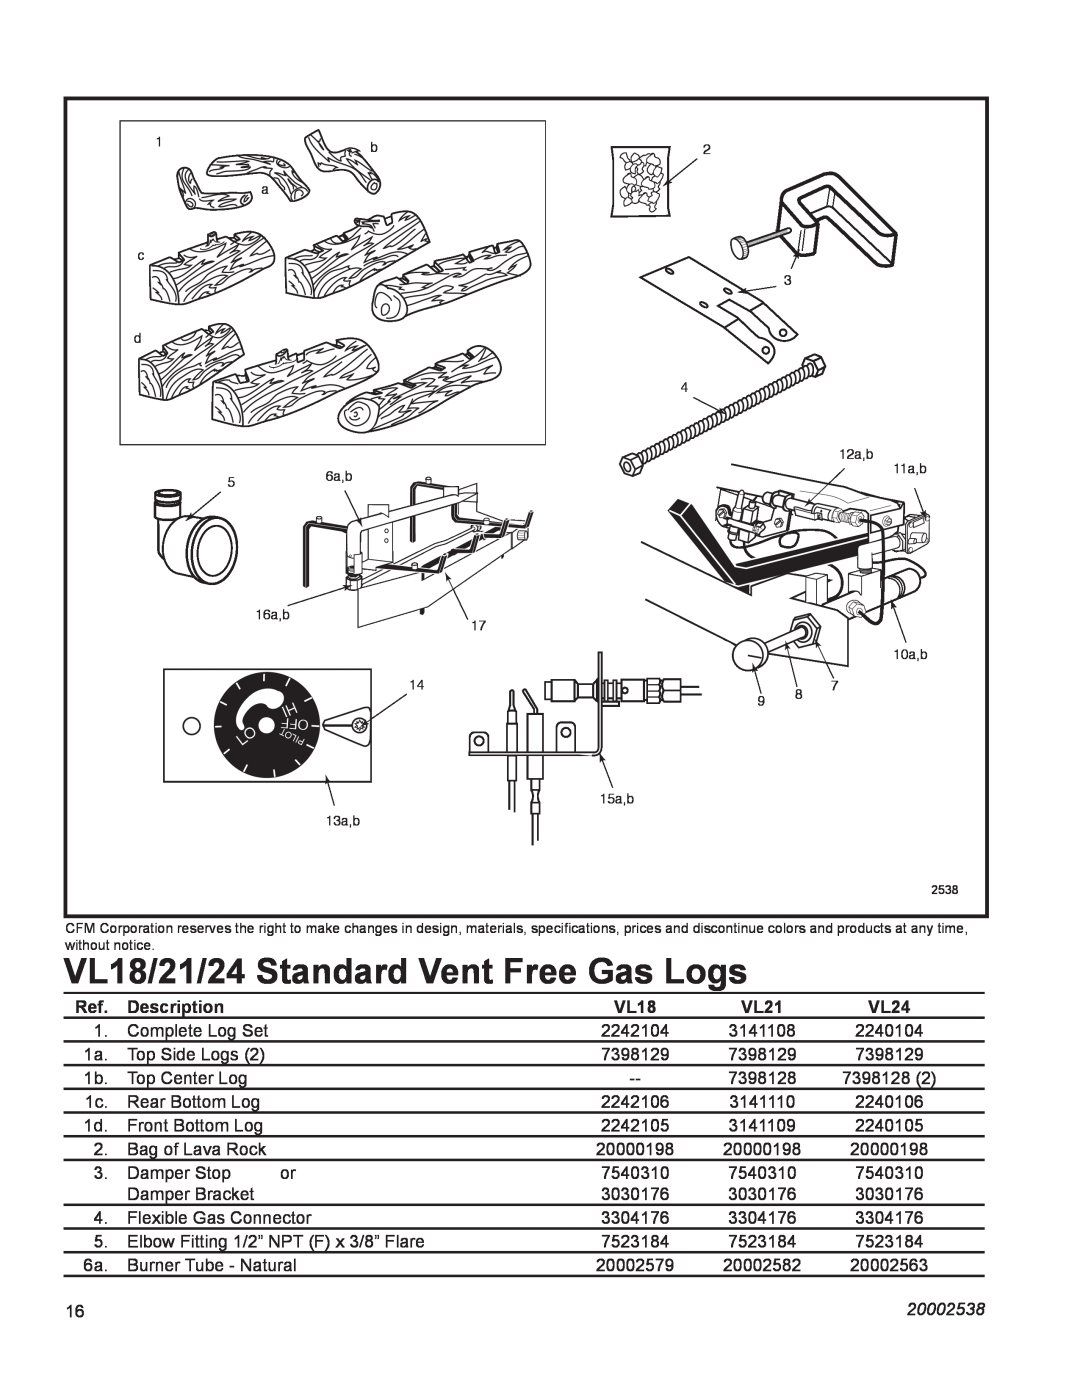 Vermont Casting VL24LP, VL18LP, VL21LP manual VL18/21/24 Standard Vent Free Gas Logs, Description, 20002538 